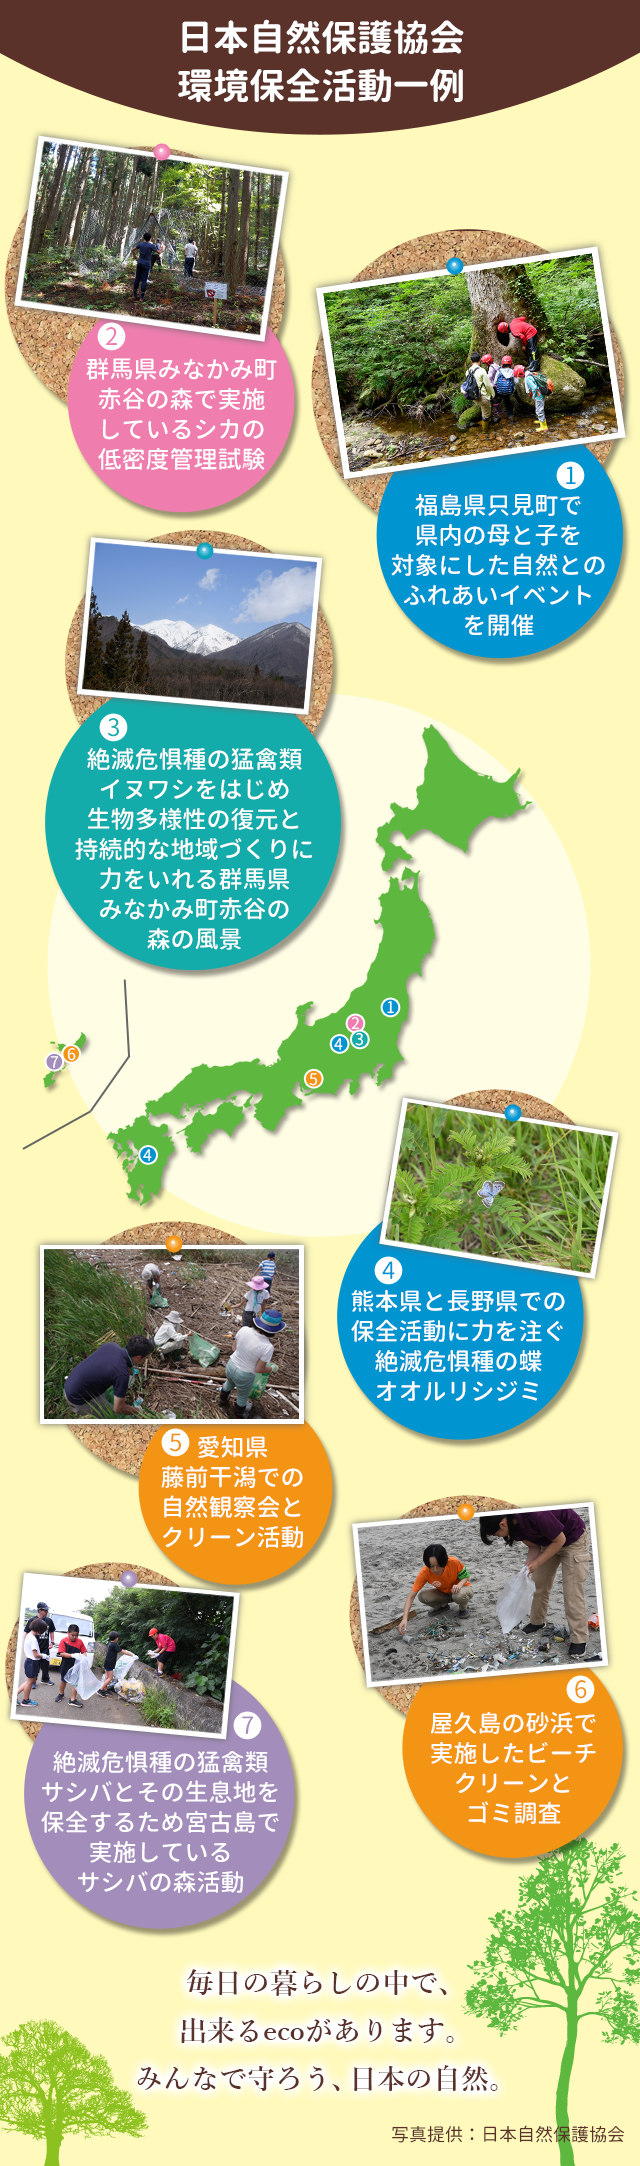 日本自然保護協会環境保全活動一例